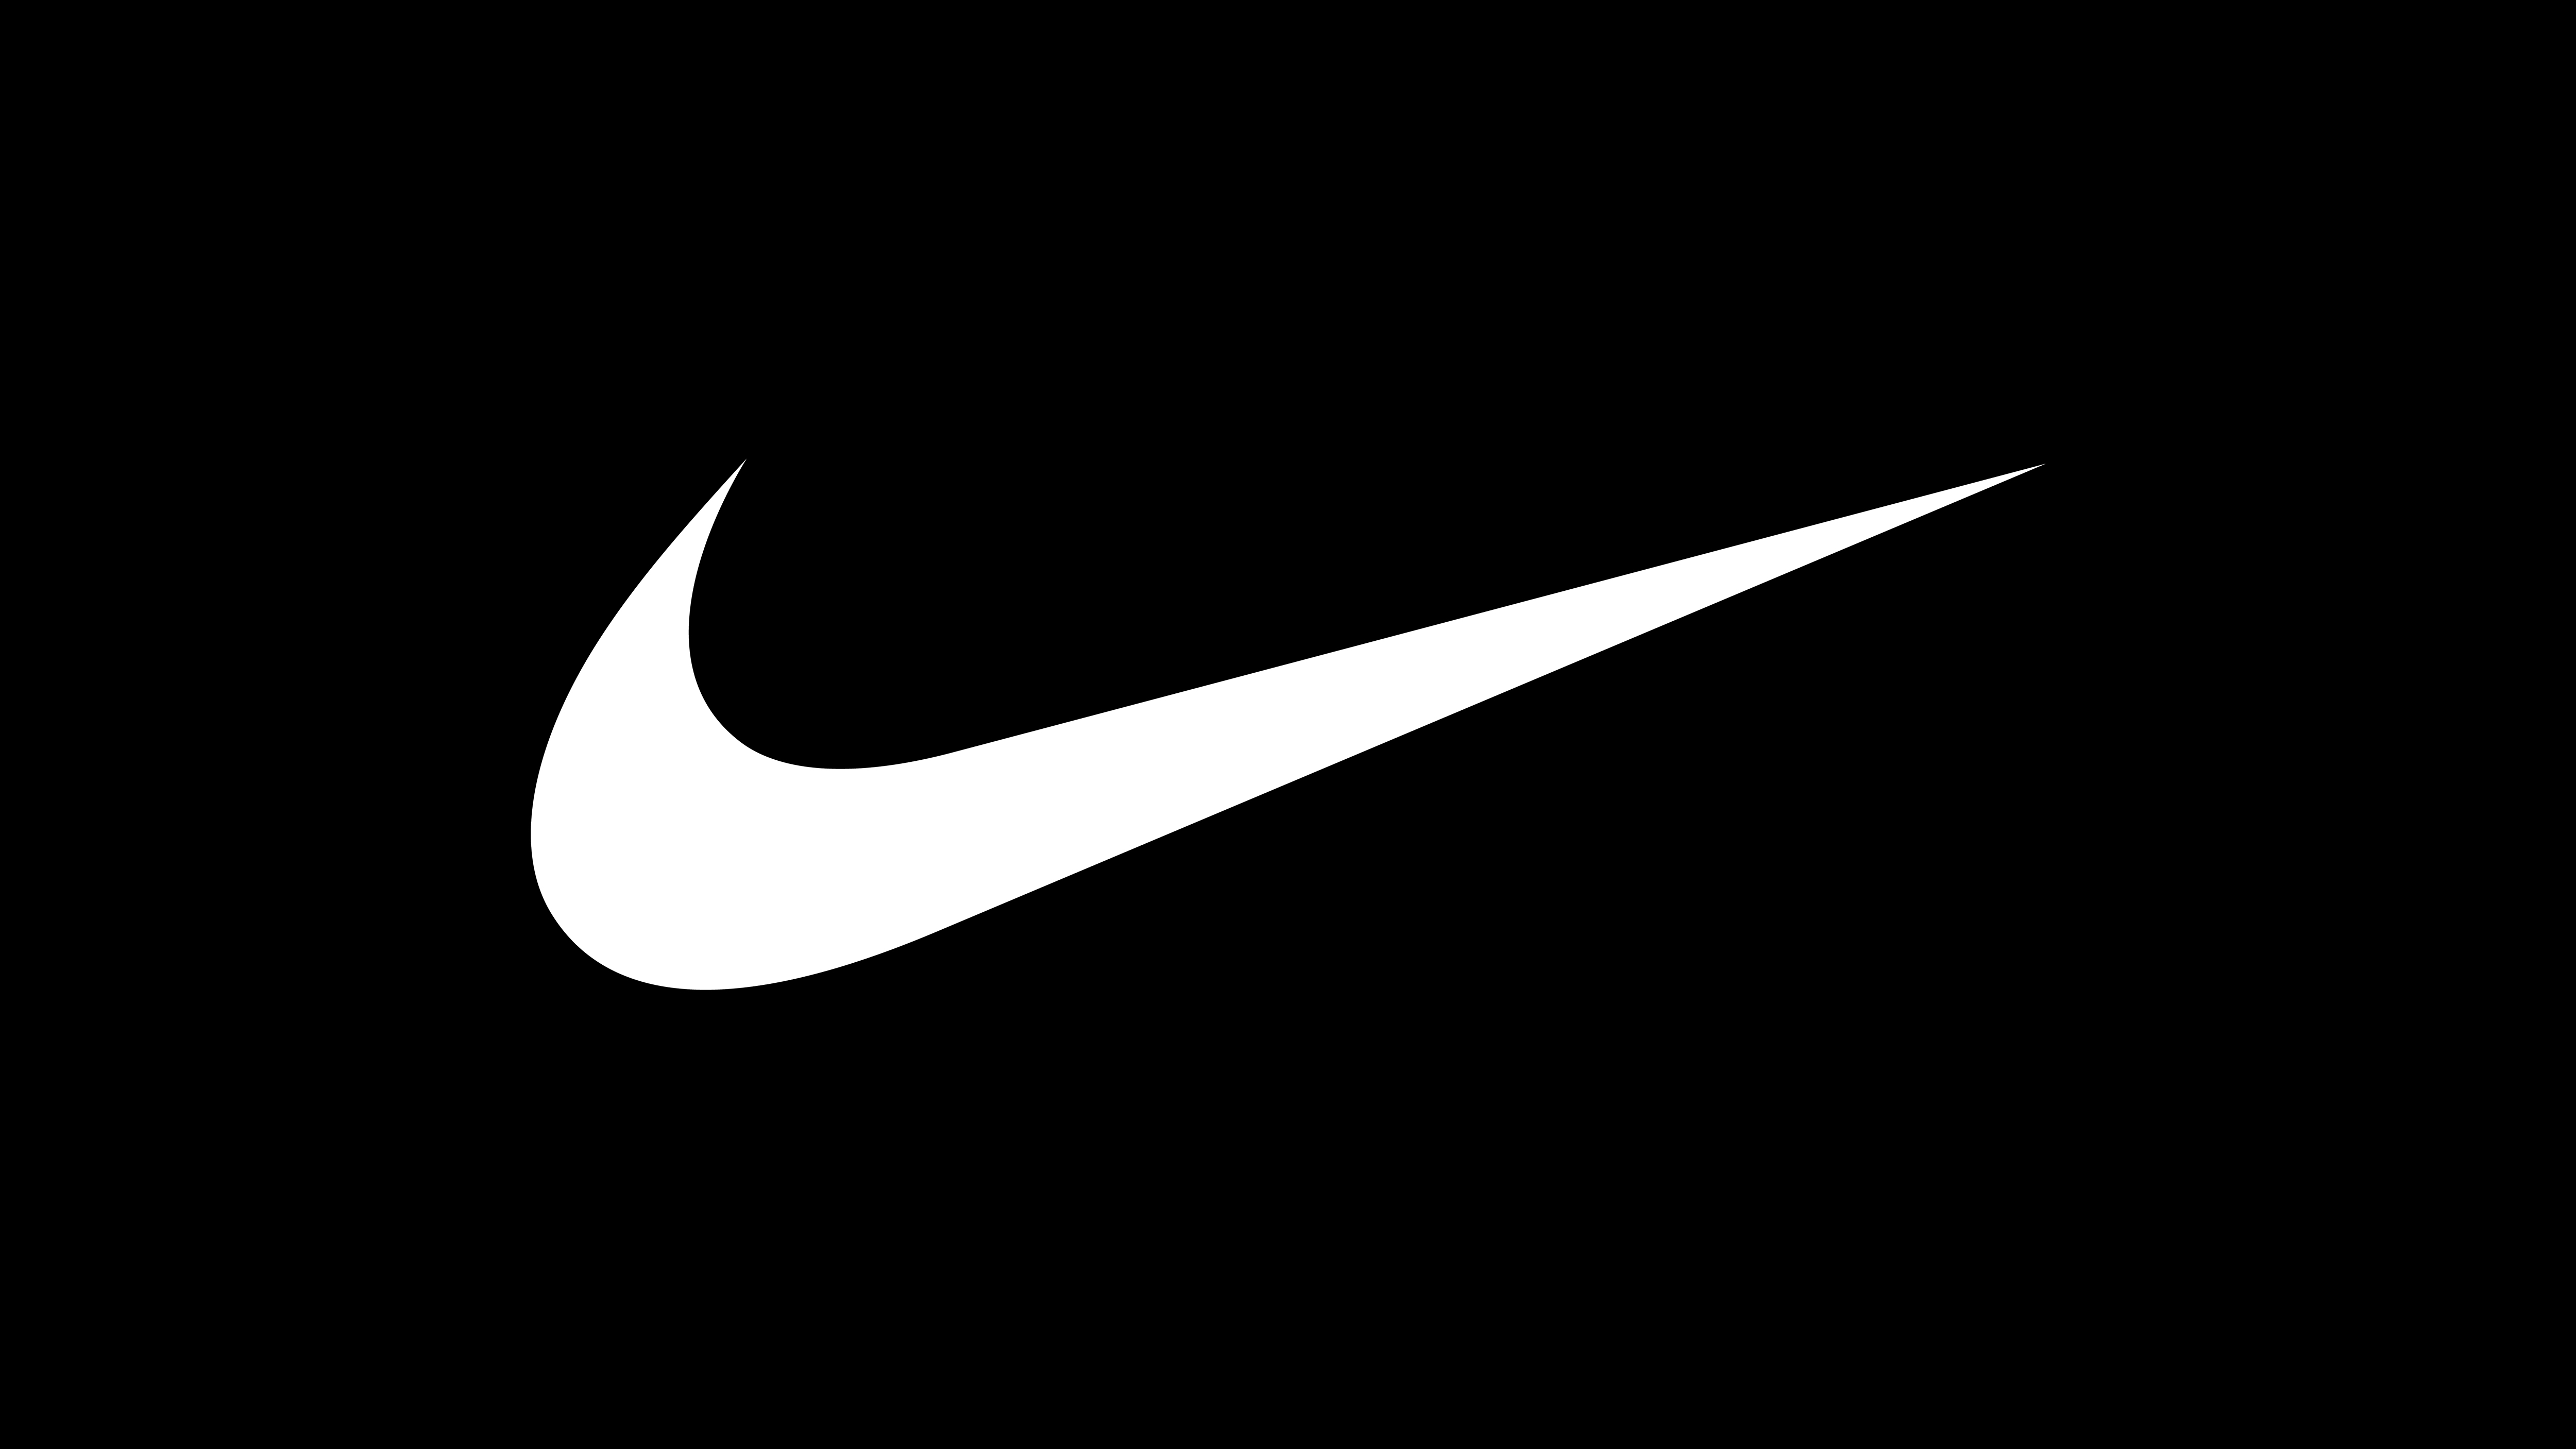 Hyperlocalization boosts Nike in China